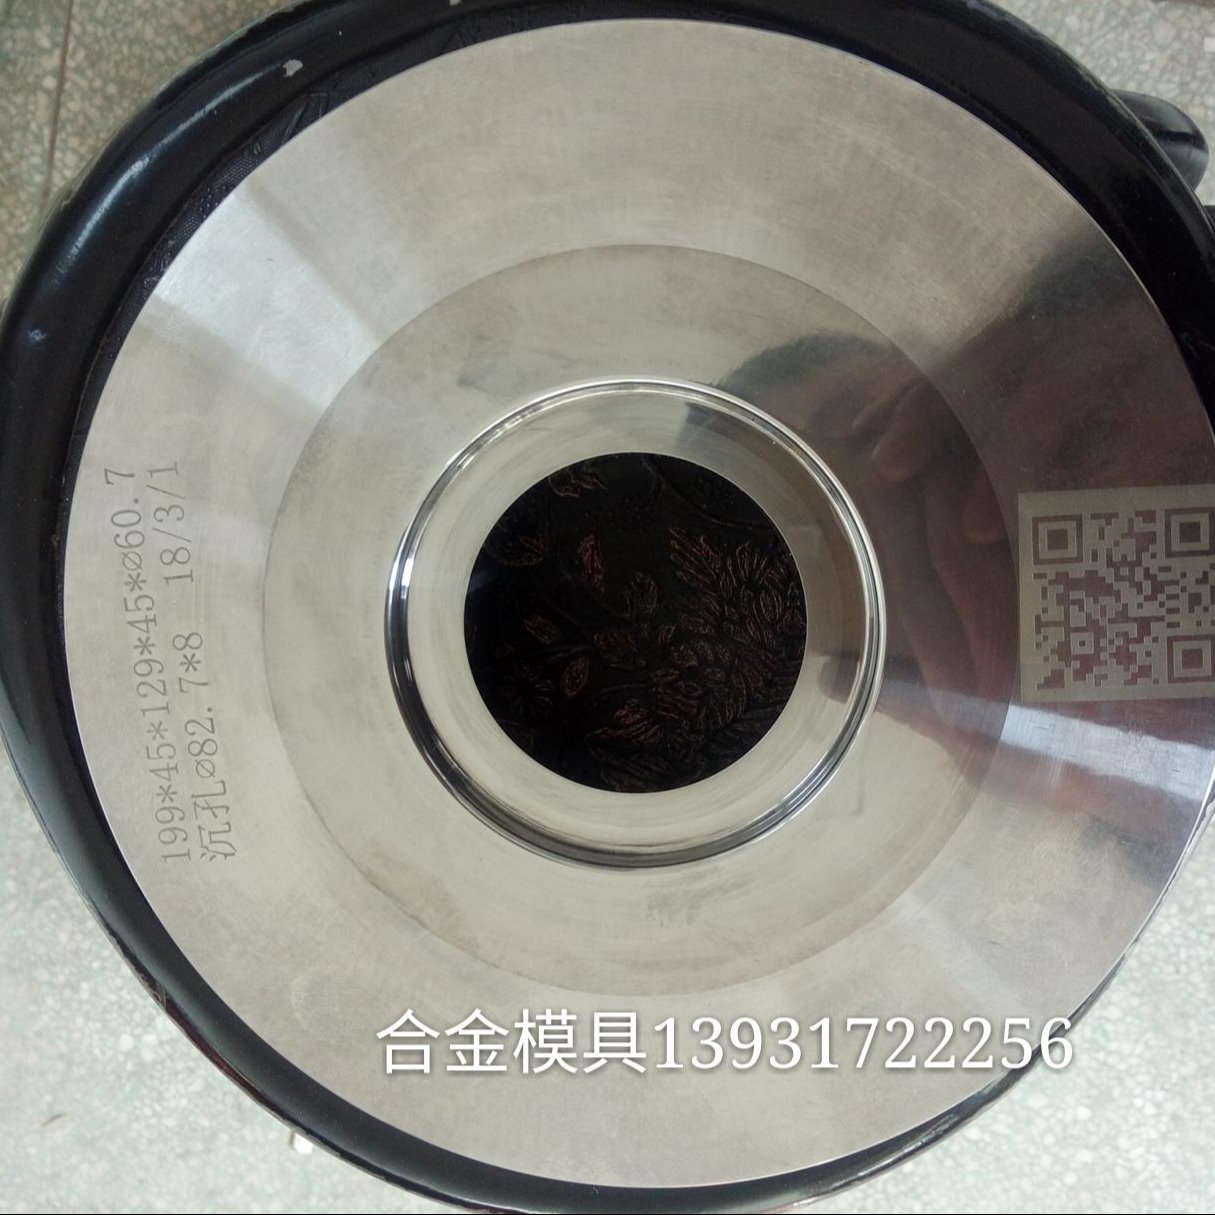 硬质合金拉伸模具广泛应用于金属拉伸罐 电容器外壳 金属容器 油封骨架等